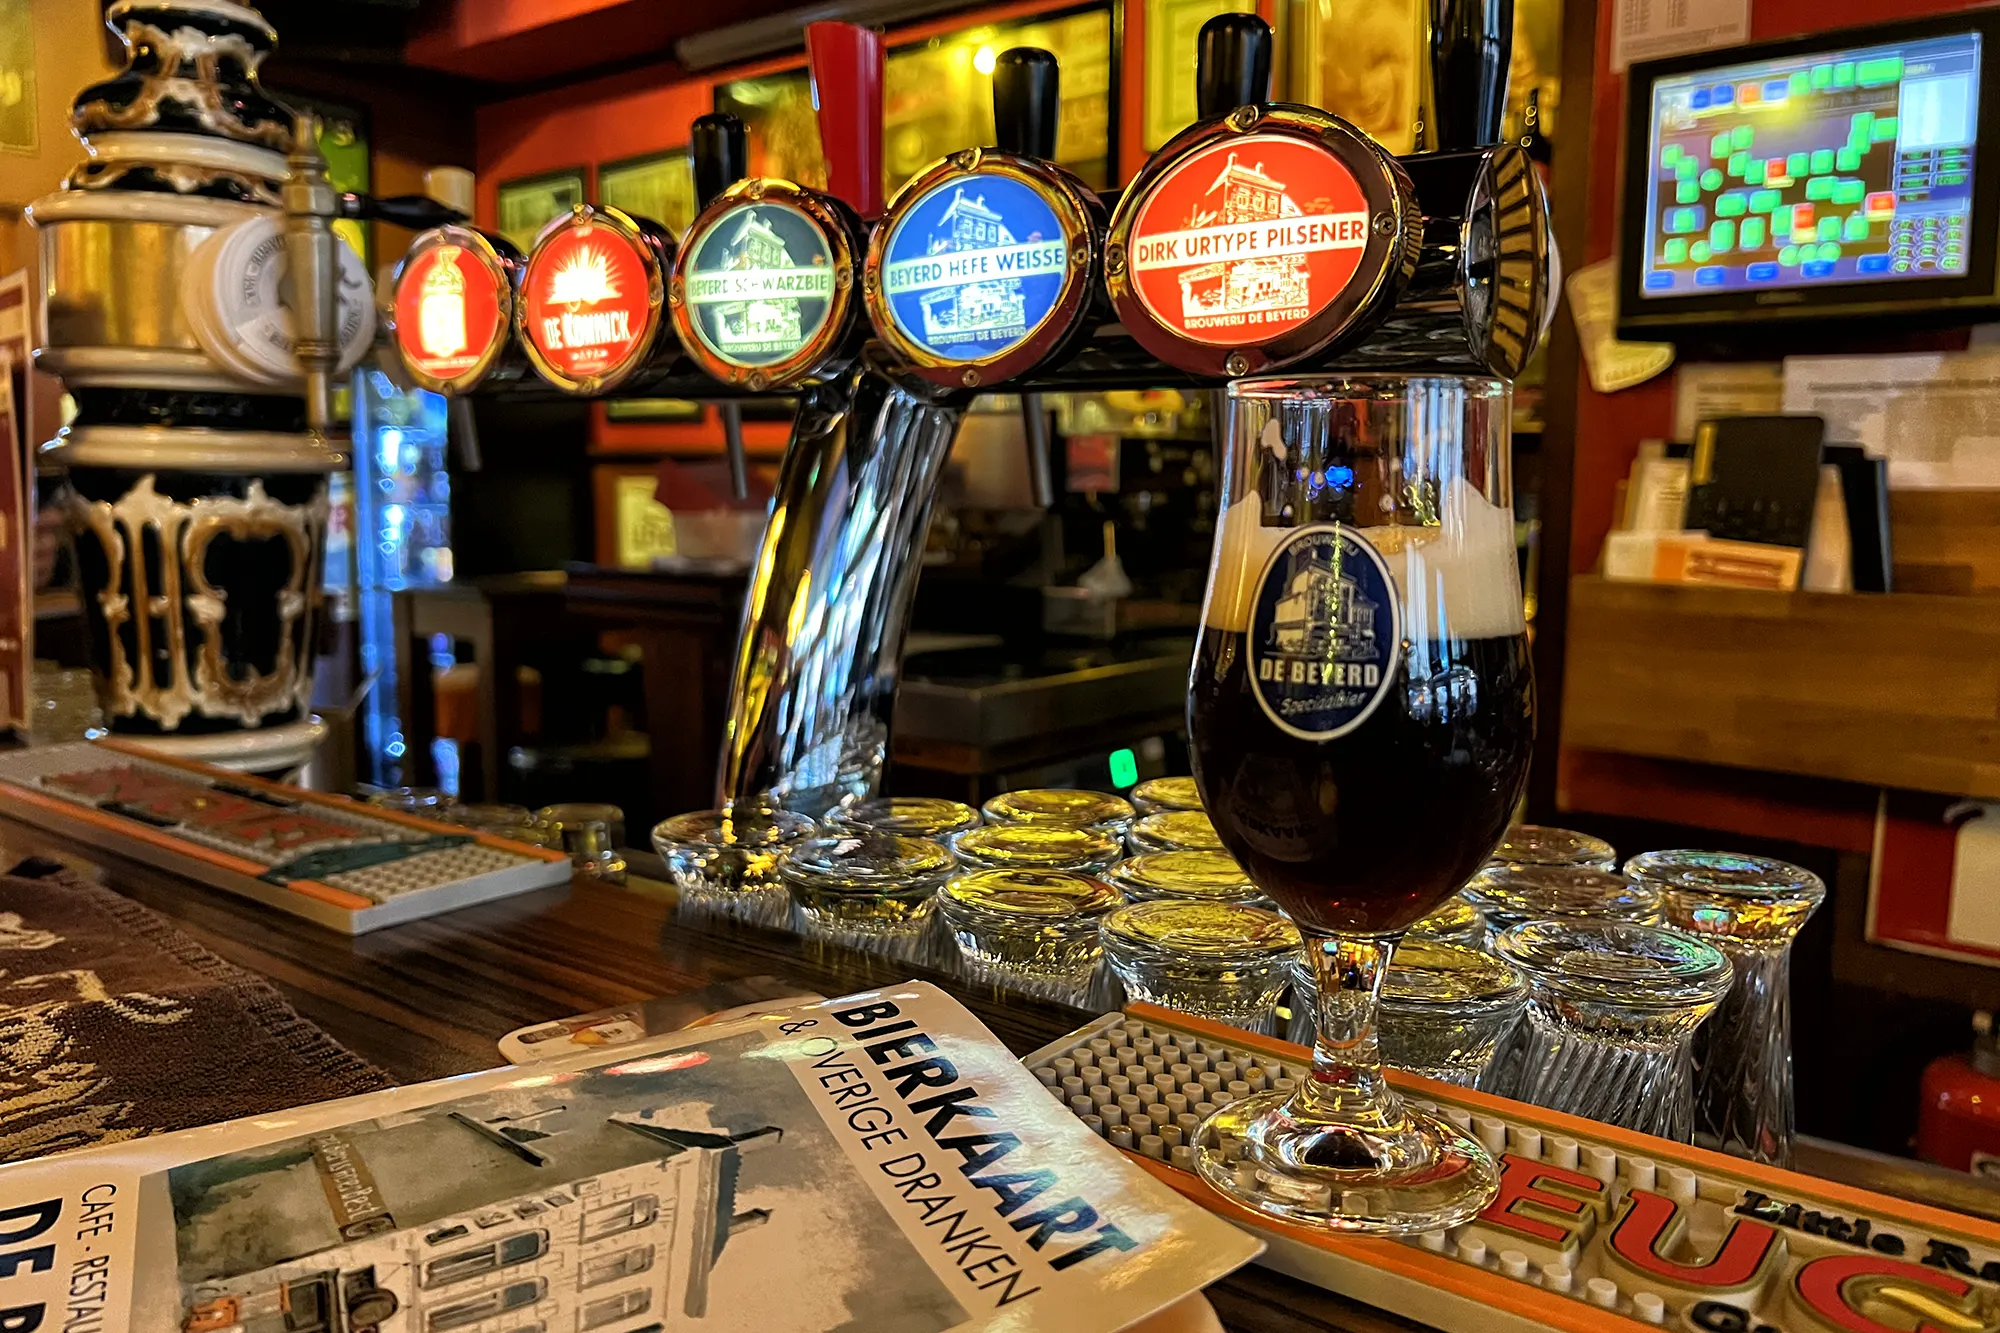 De Leukste biercafés in Breda - De Beyerd